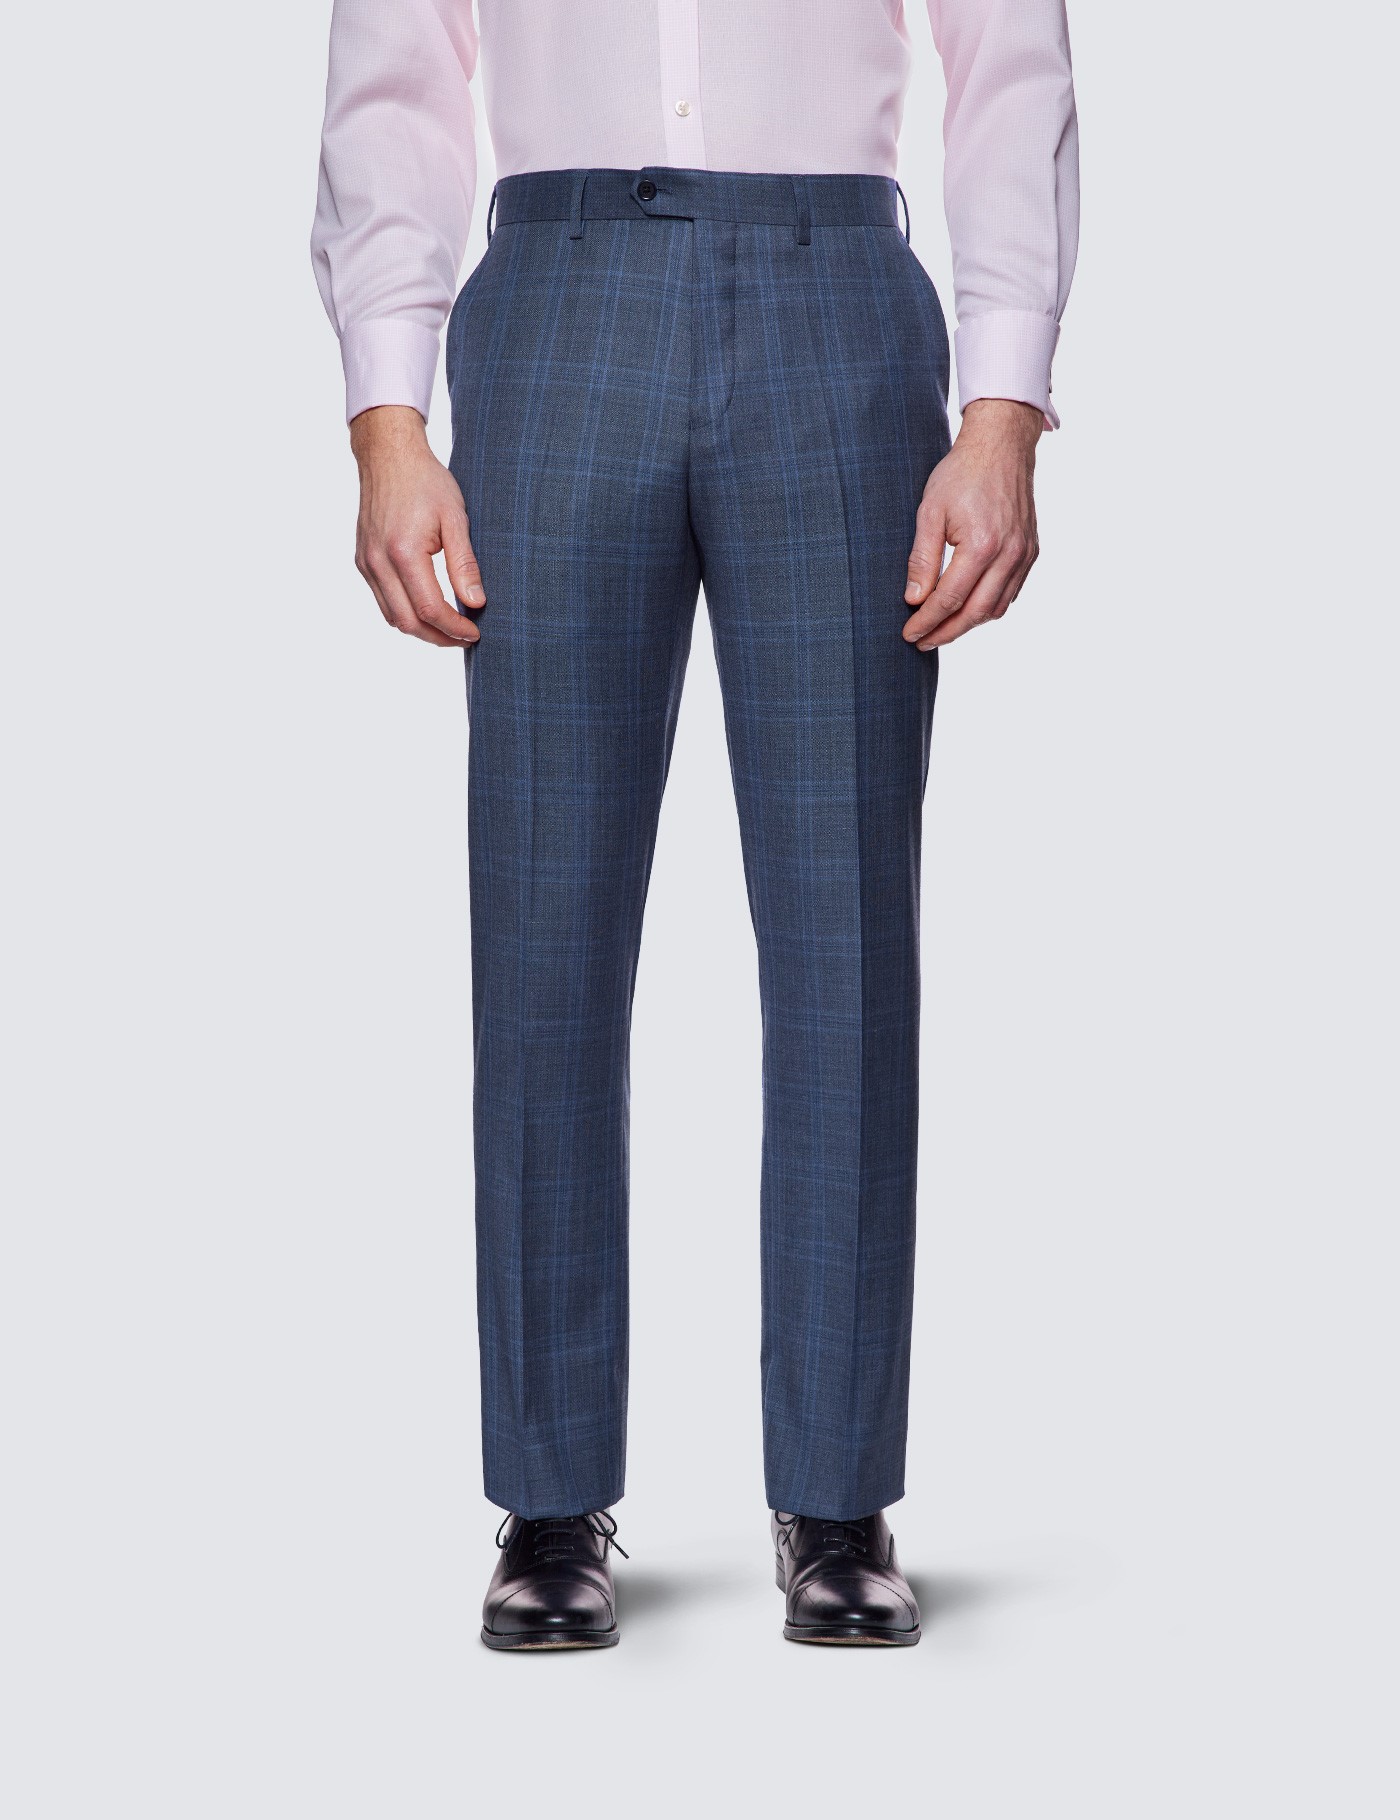 Wehilion Men's Premium Slim Fit Dress Suit Pants Slacks Tight Suit Elastic  Formal Trousers,Royal Blue,M 